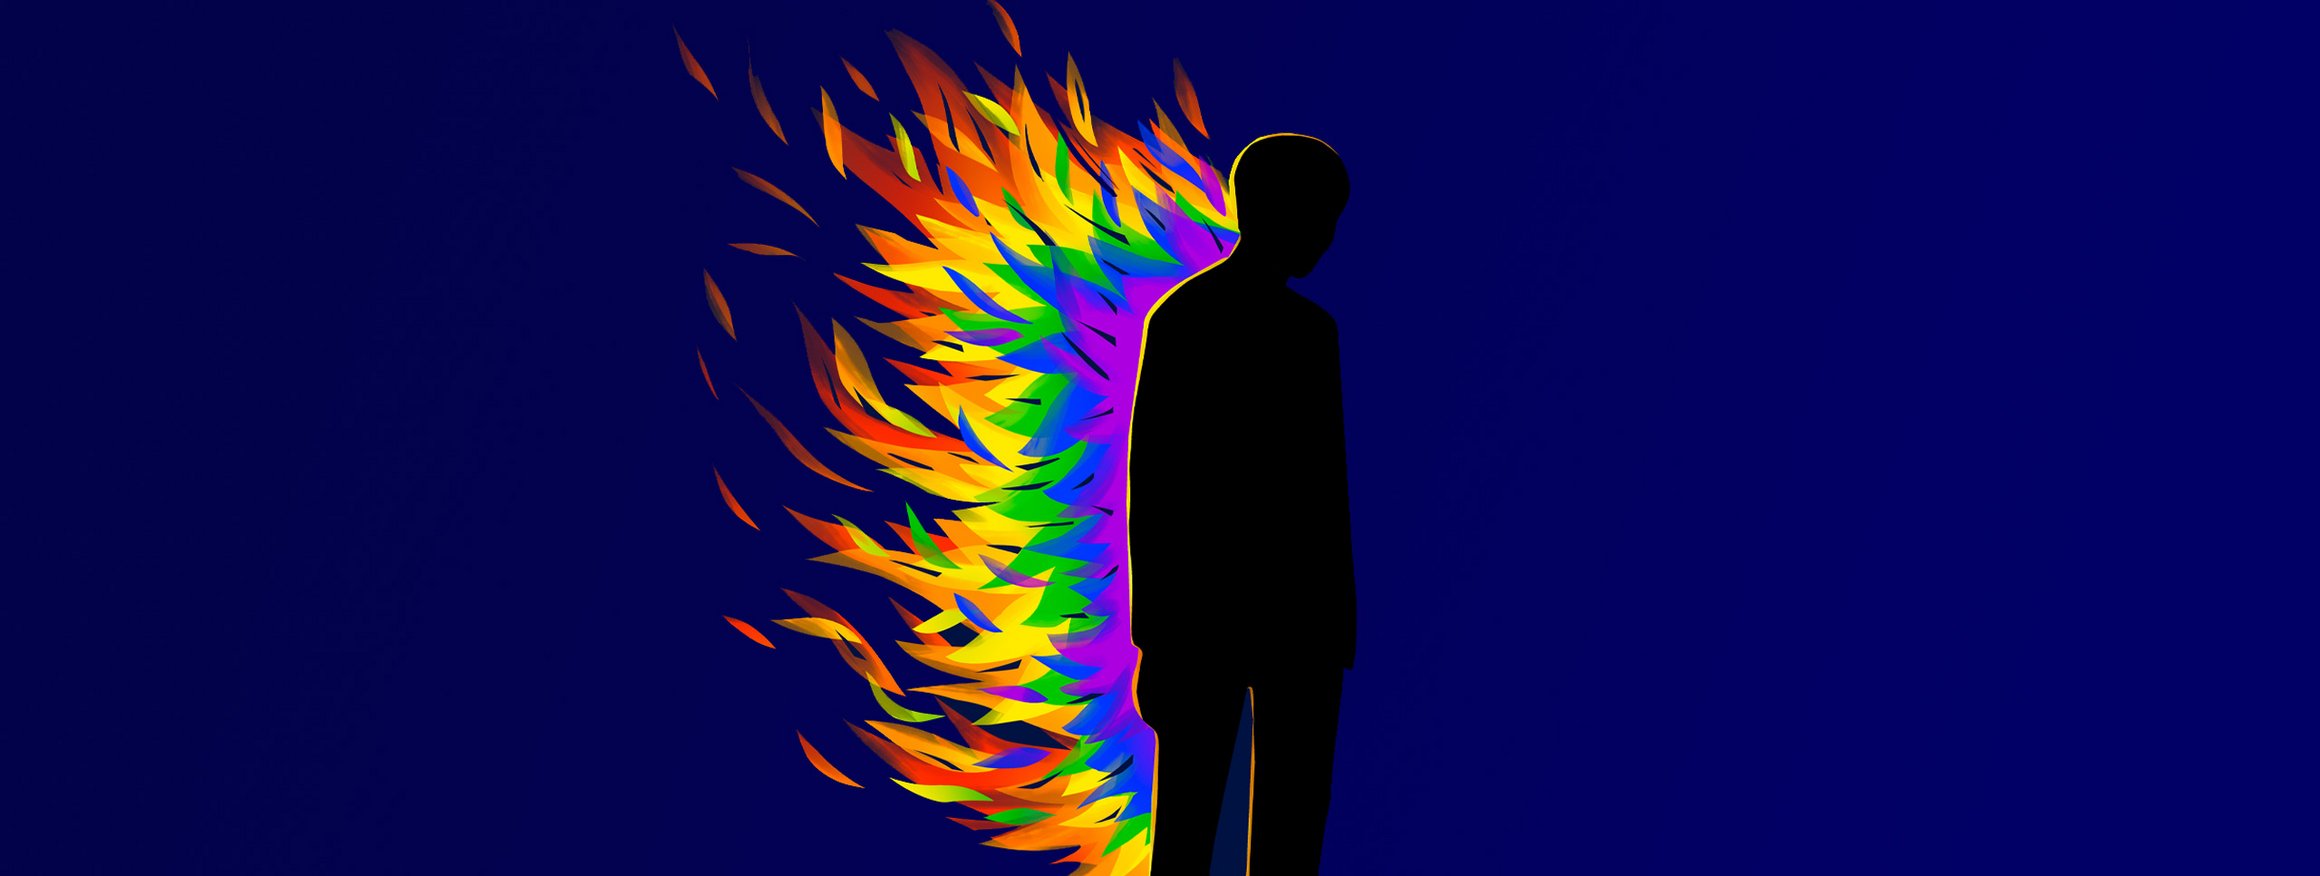 Die Illustration zeigt eine schwarze Figur, die einen homosexuellen Mann darstellt, der gegen sein Begehren ankämpft, hinter ihm sind große, bunte Flammen zu sehen